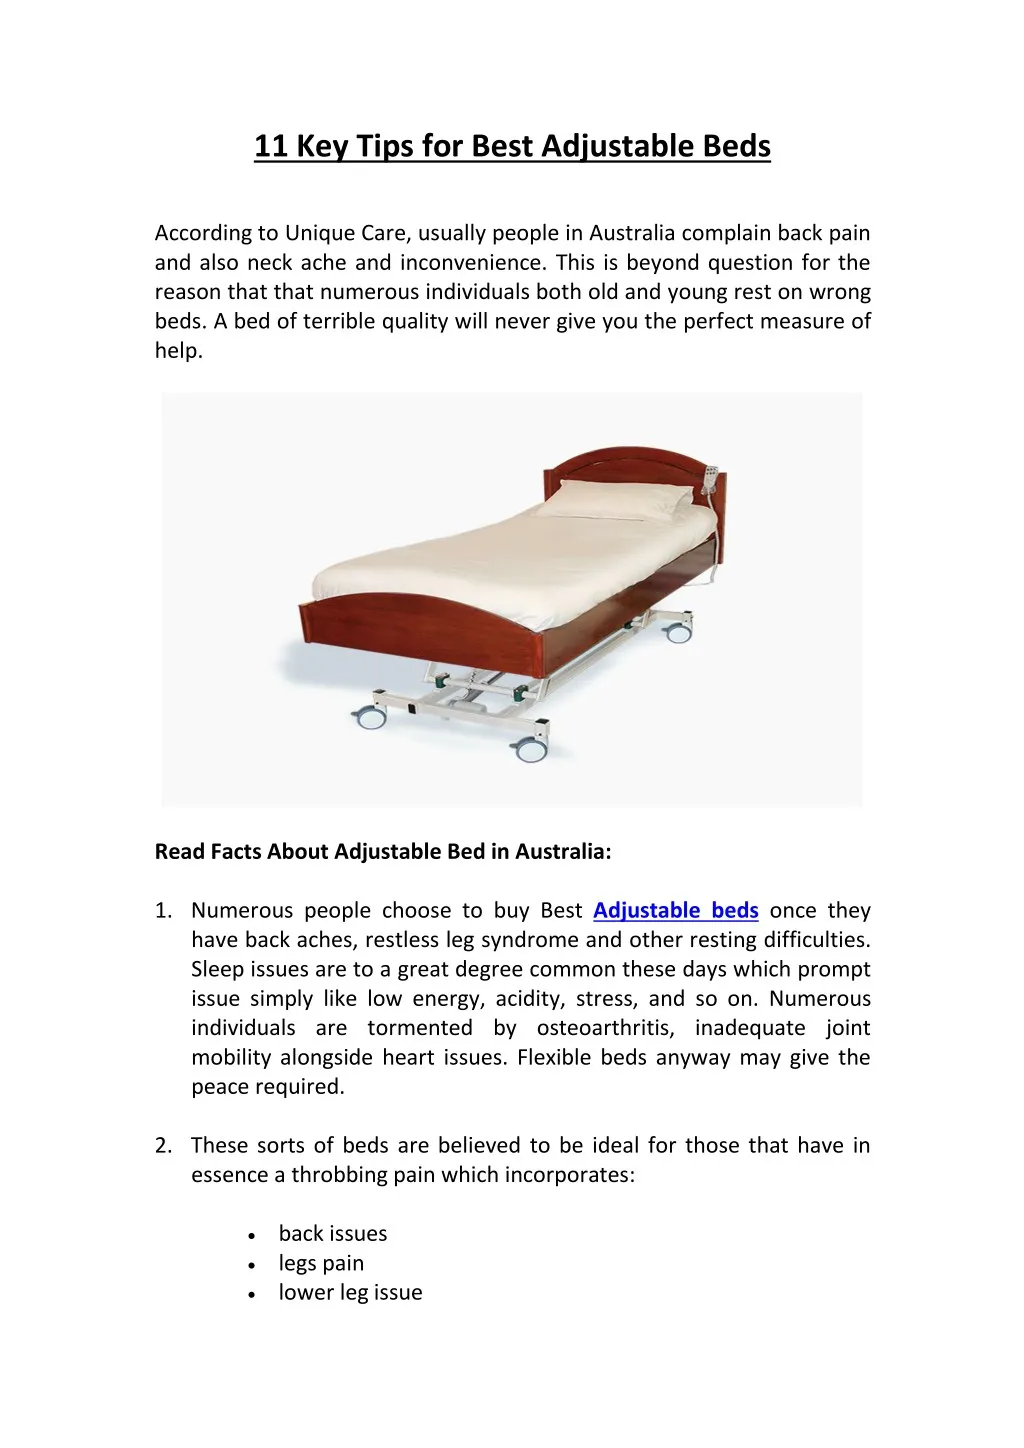 11 key tips for best adjustable beds